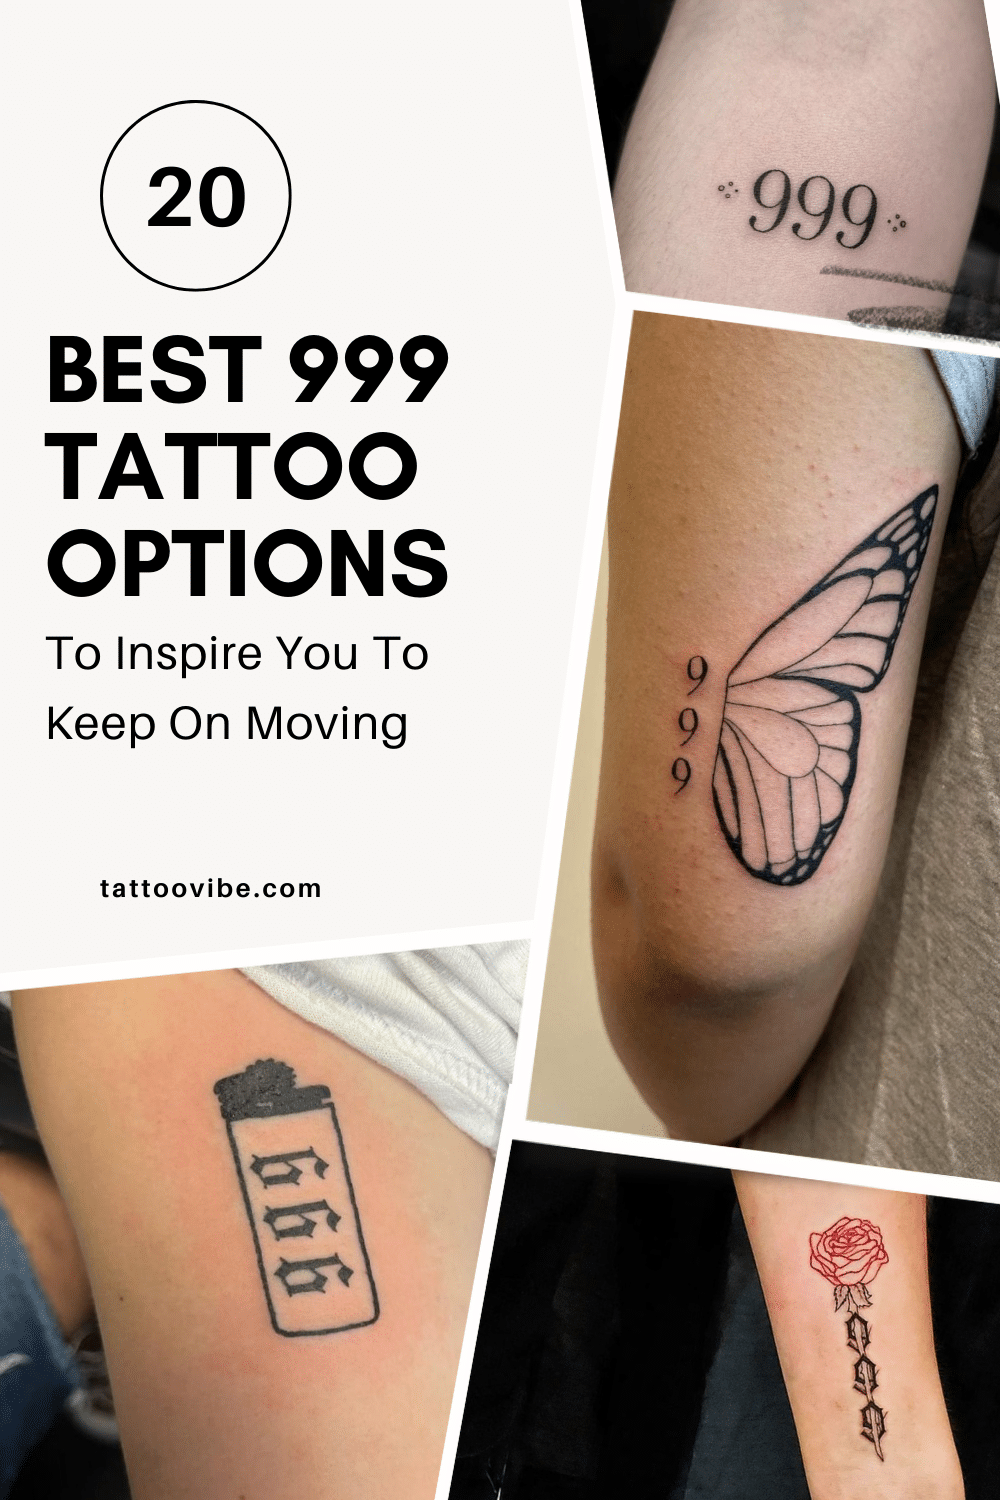 Las 20 mejores opciones de tatuajes 999 para inspirarte a seguir adelante